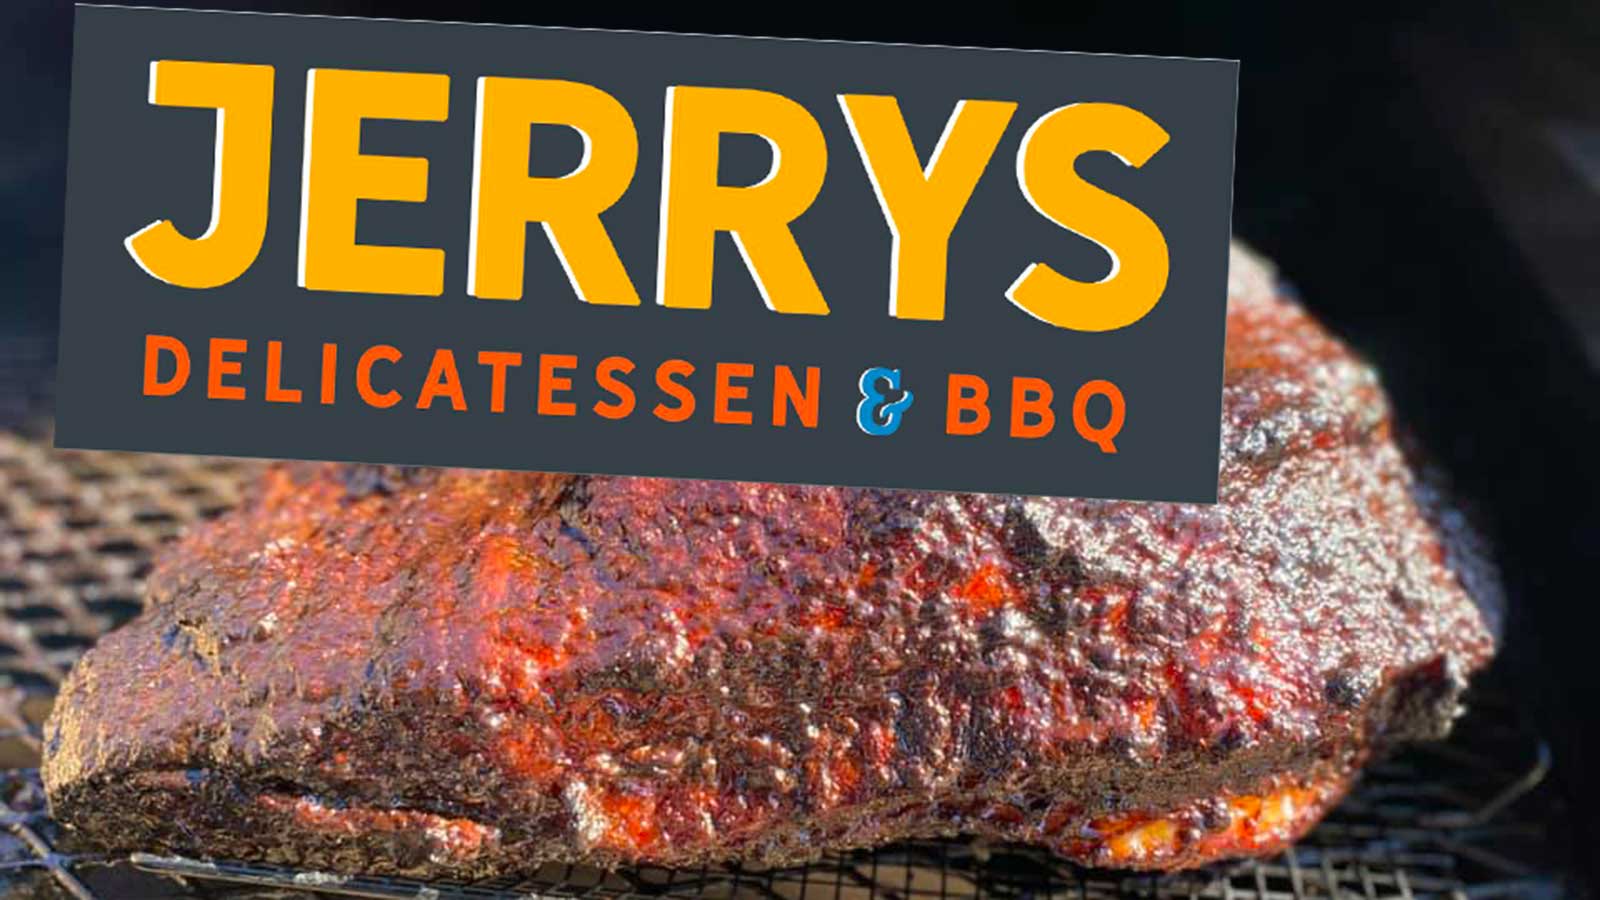 Jerry's Delicatessen & BBQ